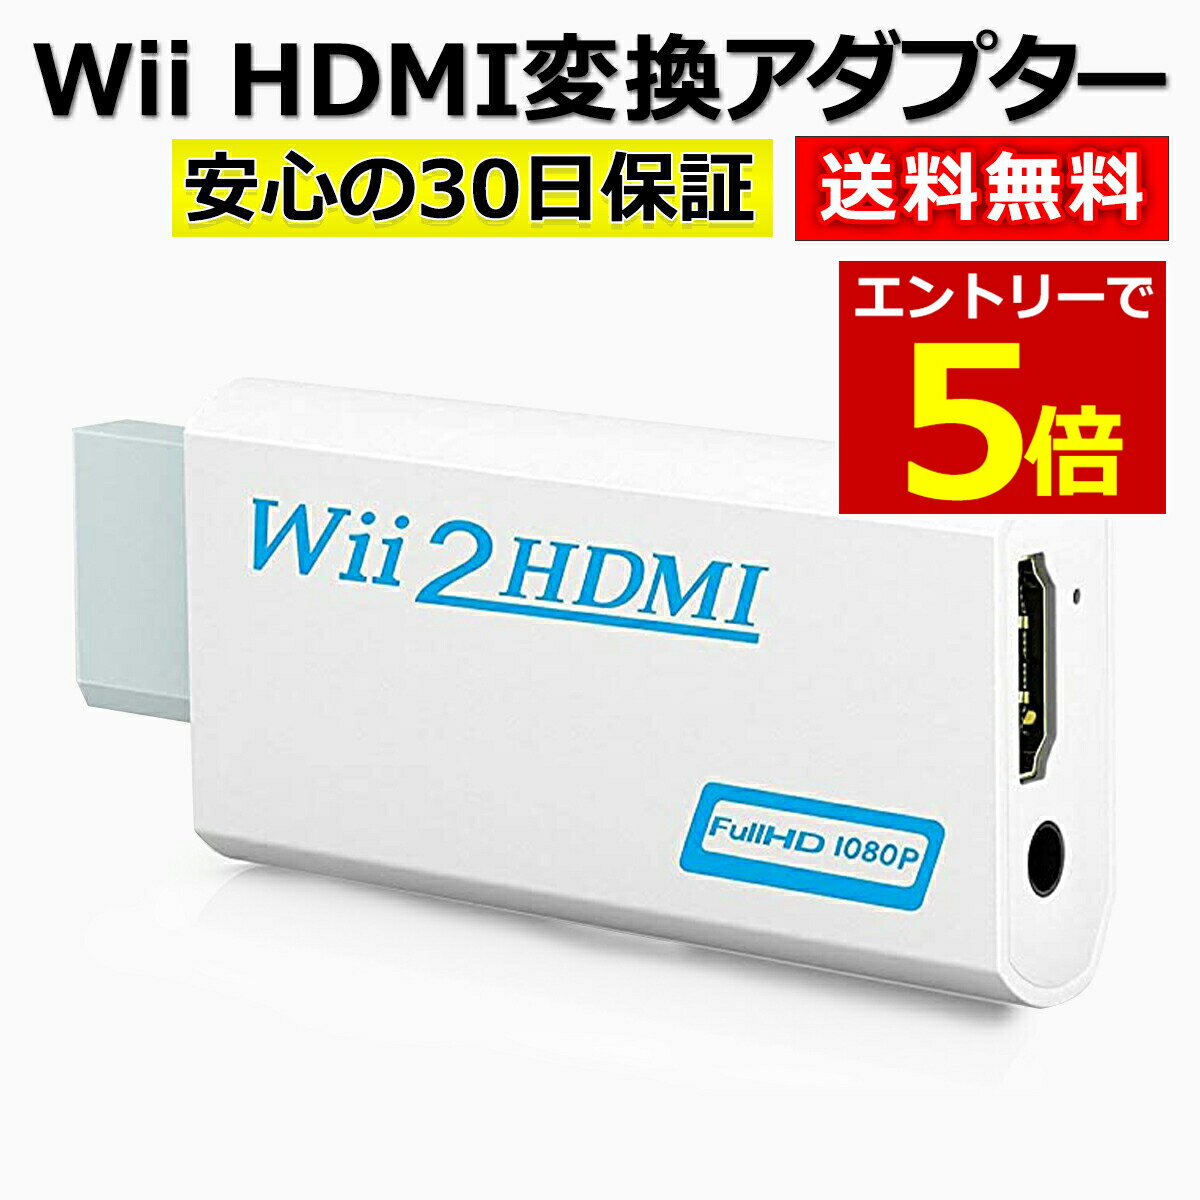 【6/1当店エントリーでP最大5倍!】Wii